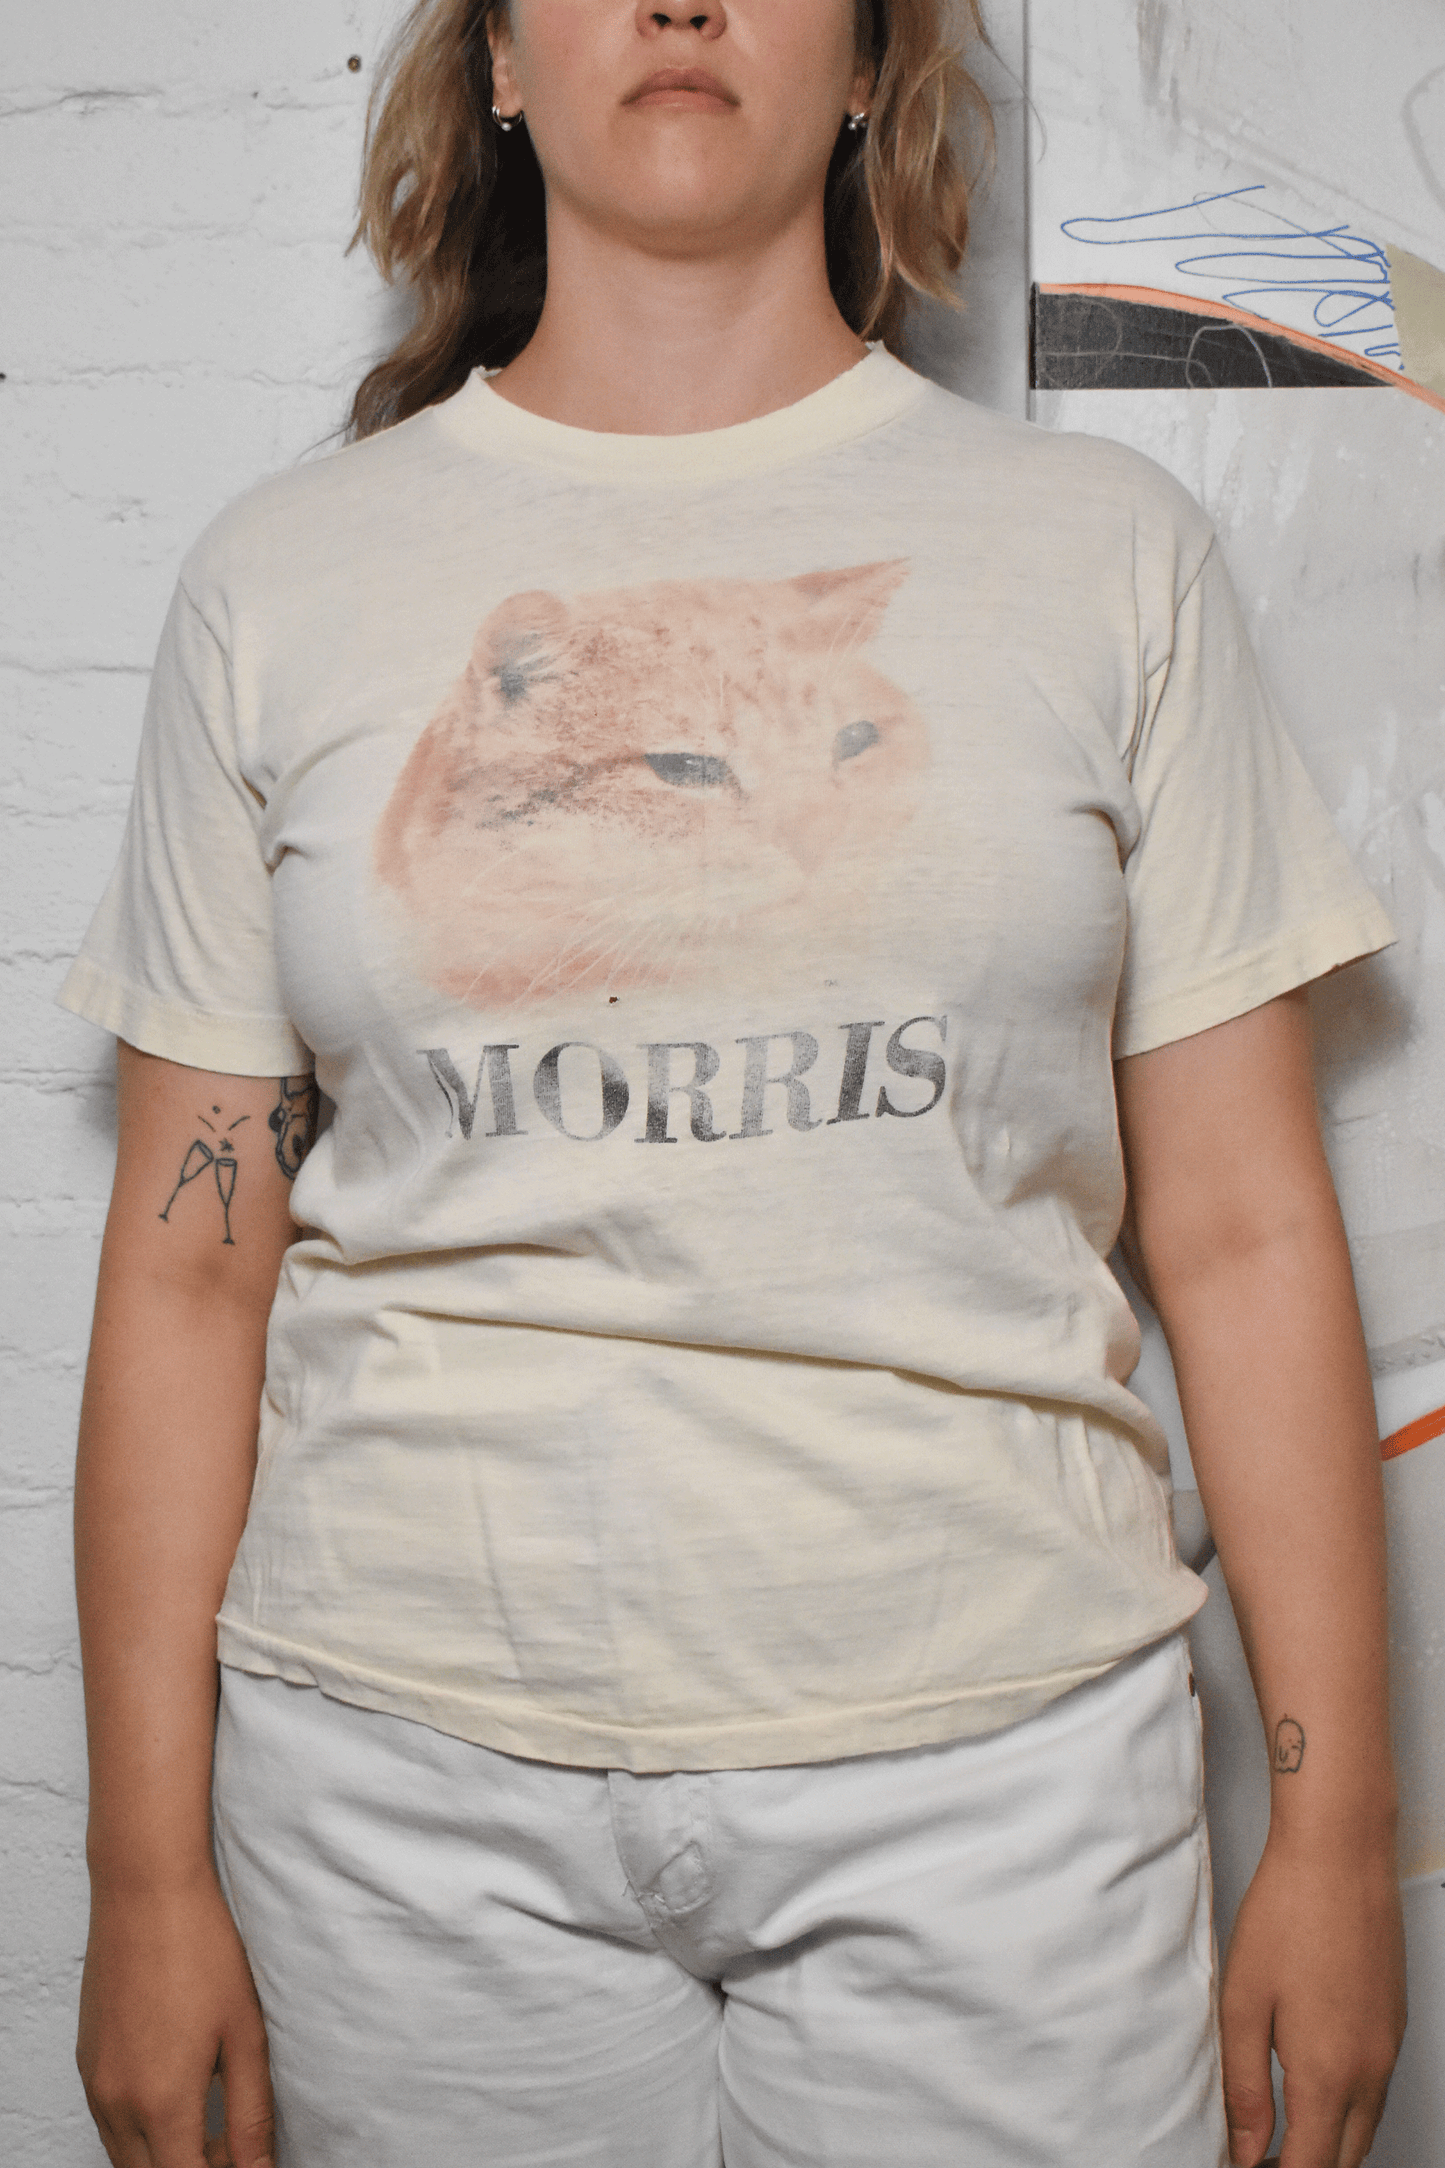 Vintage 1970s "Morris" Cat T-shirt